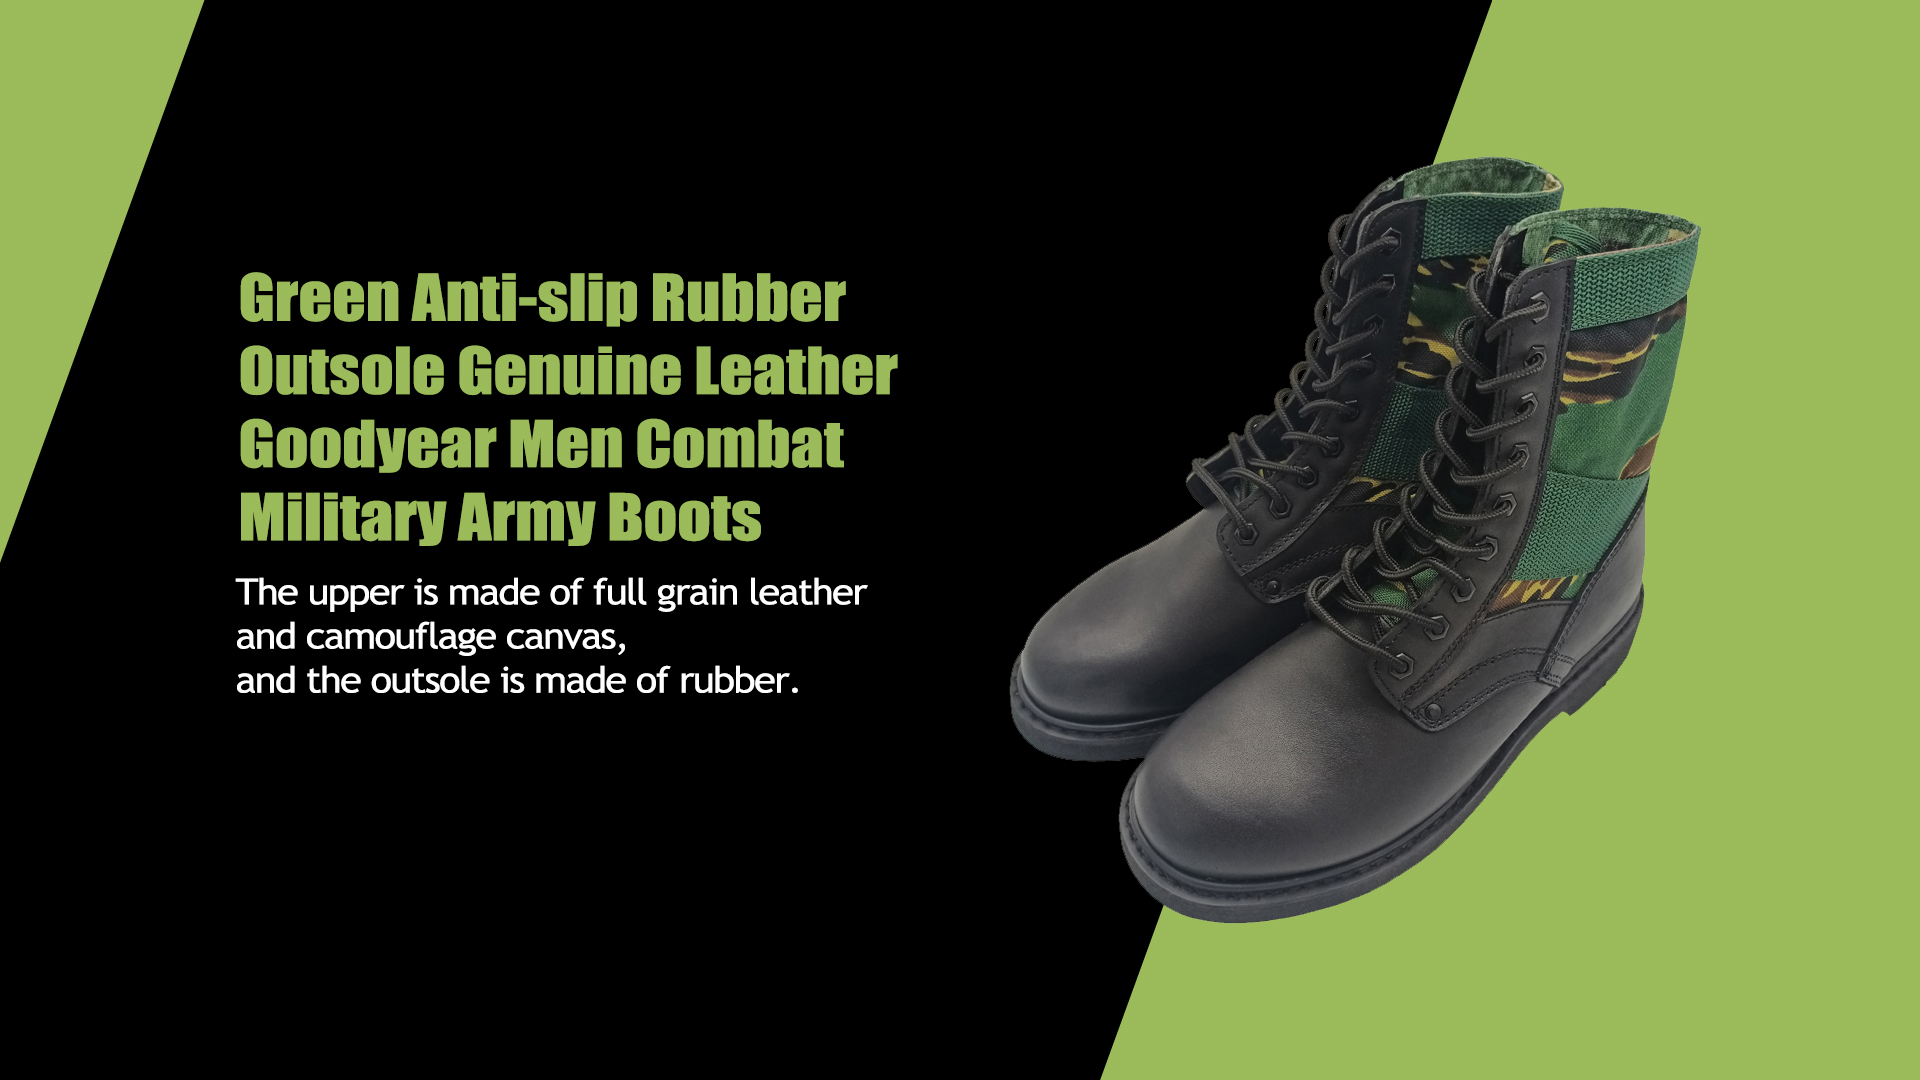 گرین اینٹی سلپ ربڑ آؤٹسول اصلی لیدر گڈیئر مین کامبیٹ ملٹری آرمی کے جوتے